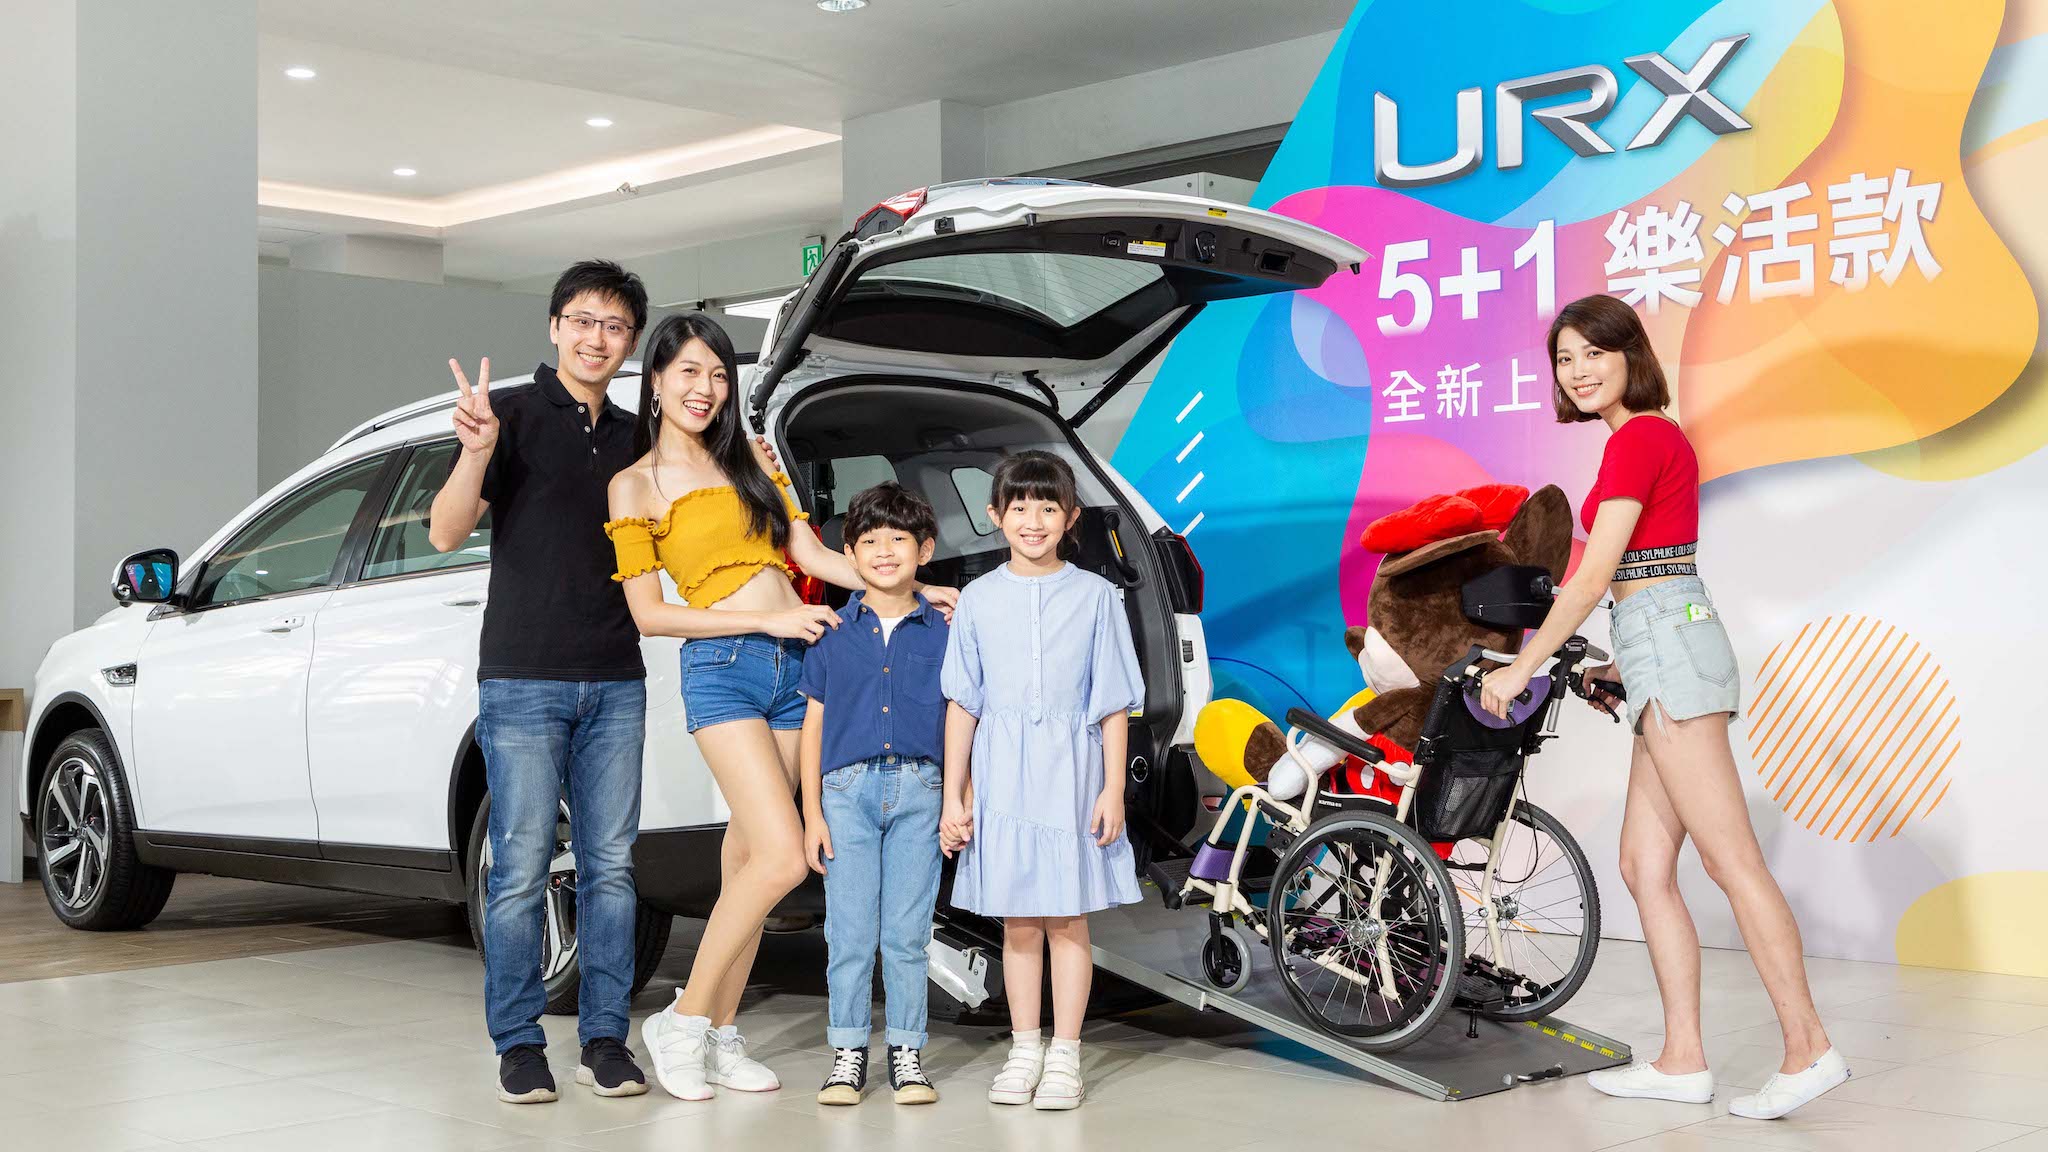 一車多用 Luxgen URX 5+1樂活款，早鳥優惠價 84.8 萬起